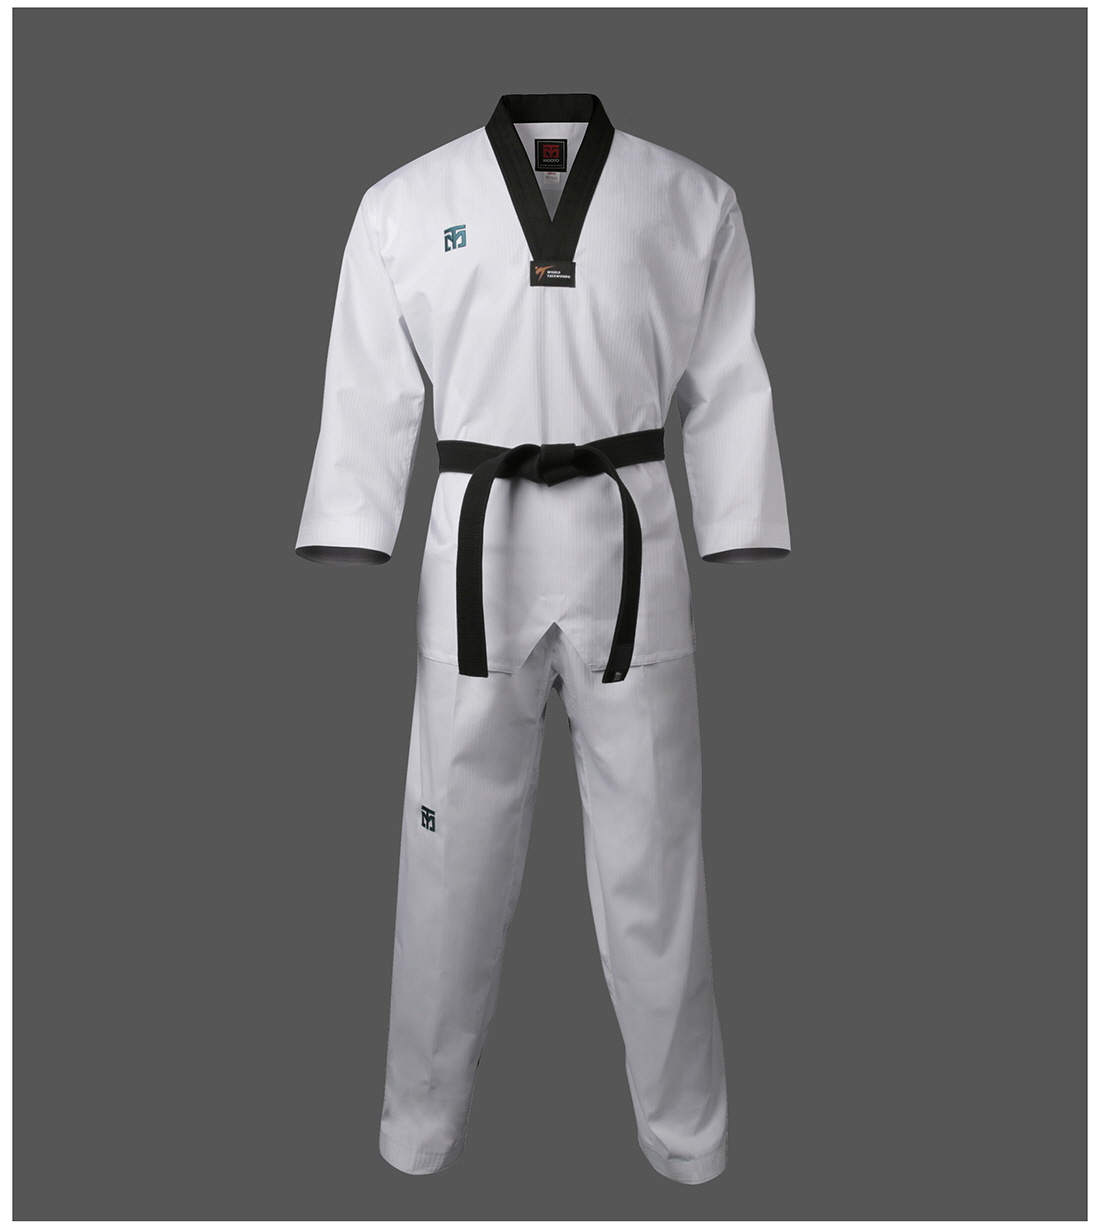 Mooto Challenger Suits V White Neck Dobok Taekwondo Uniforms New WT Logo MMA TKD 